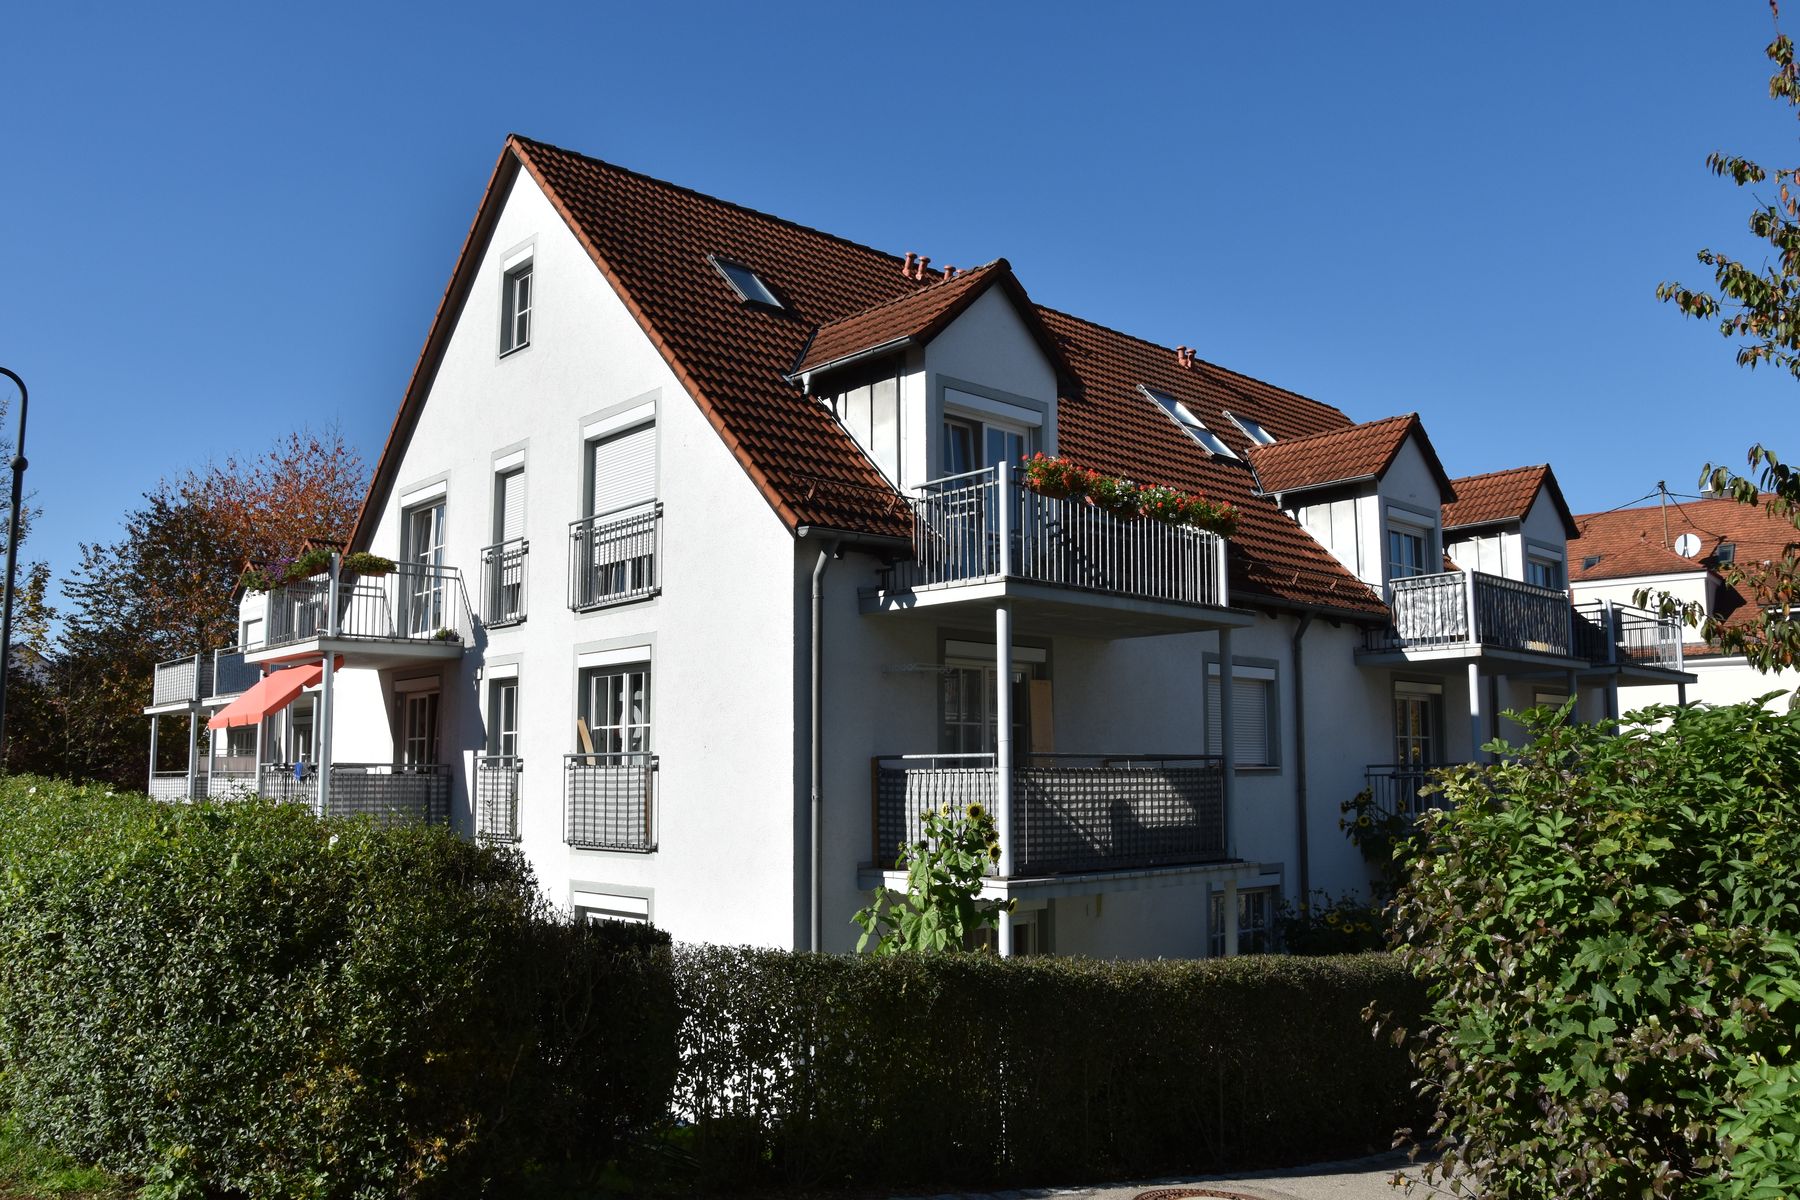 Дешевое жилье в европе купить slovakia real estate luxury